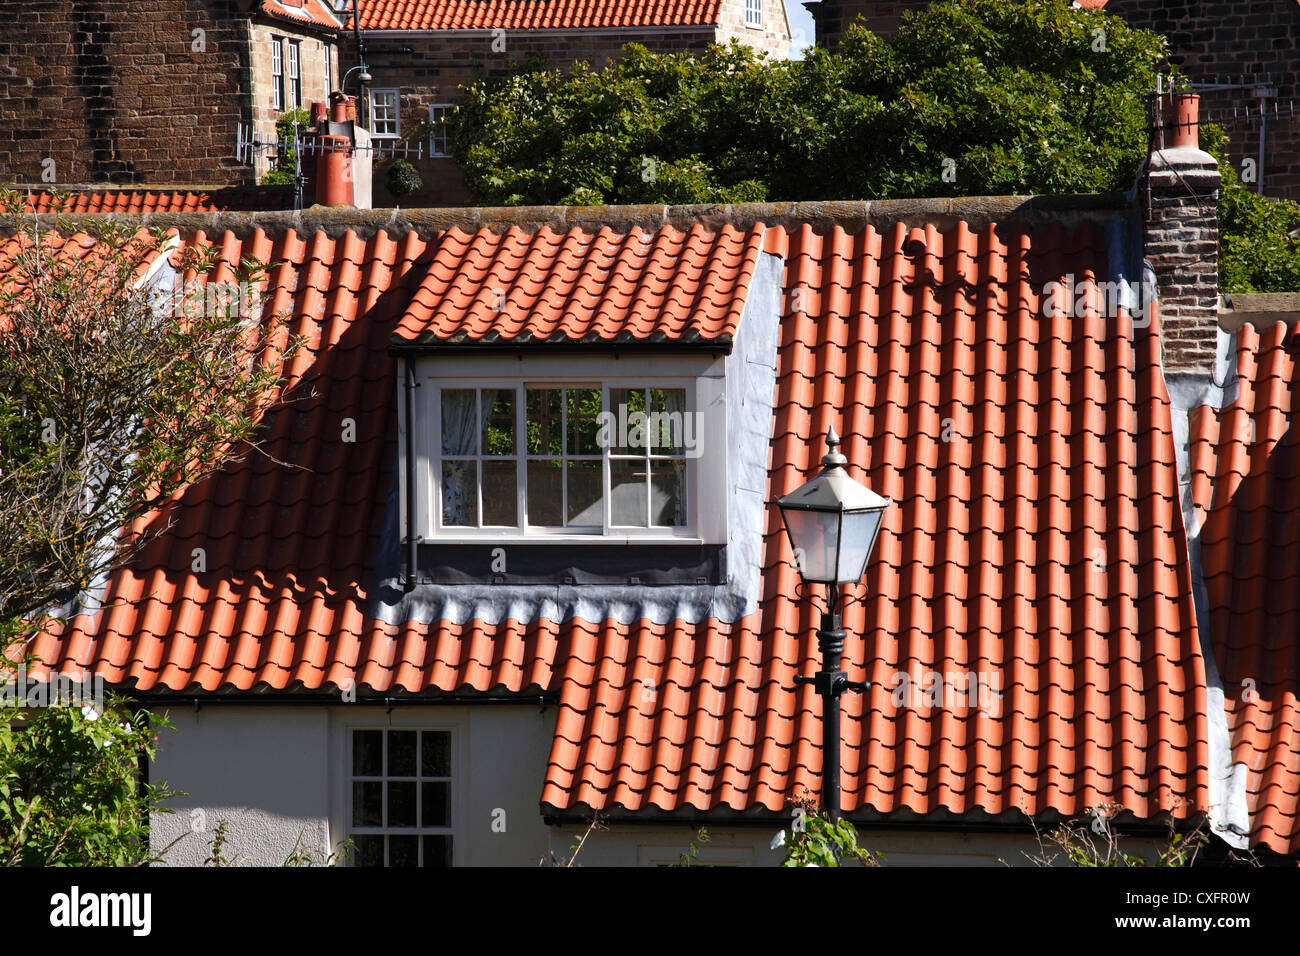 Eine Dachgaube auf ein Haus in Großbritannien Stockfotografie - Alamy